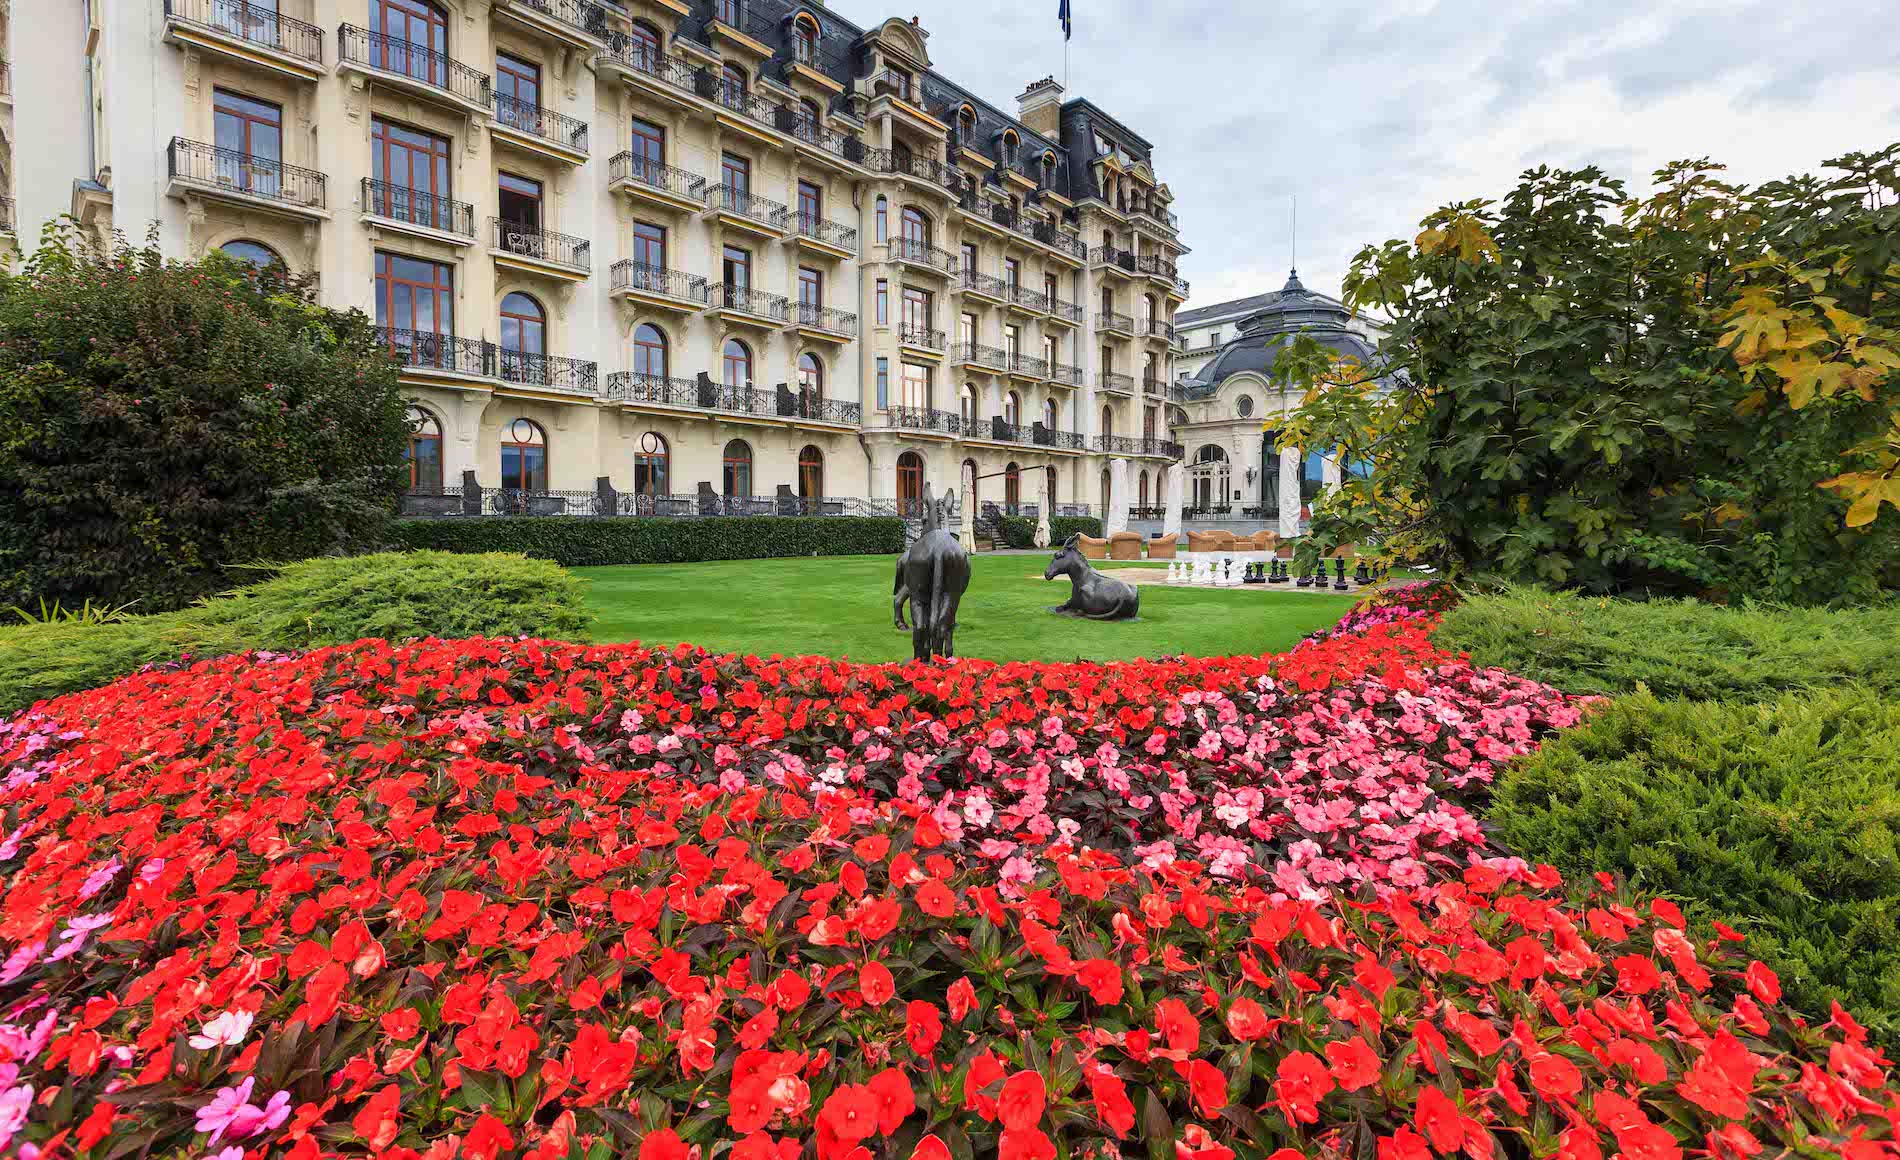 Beau-Rivage Palace Hotel